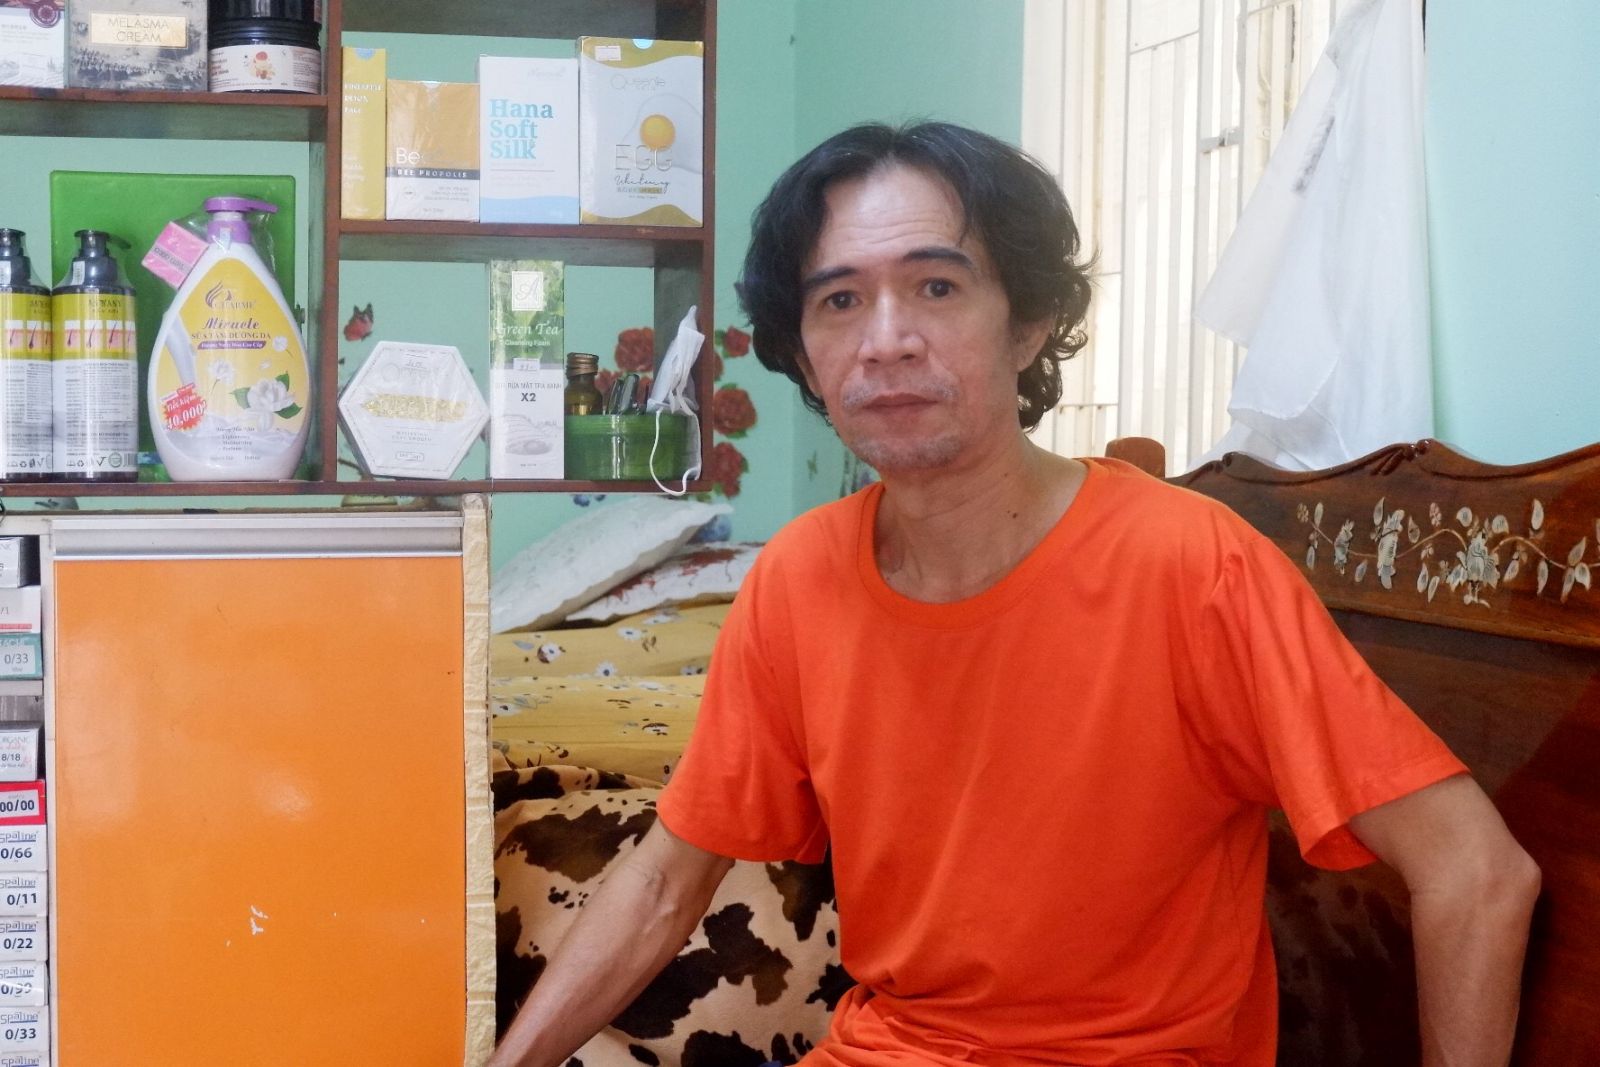 Nhờ theo đuổi bộ môn khiêu vũ, đã 55 tuổi, ông Lê Thanh Tùng vẫn giữ được vóc dáng khỏe khoắn